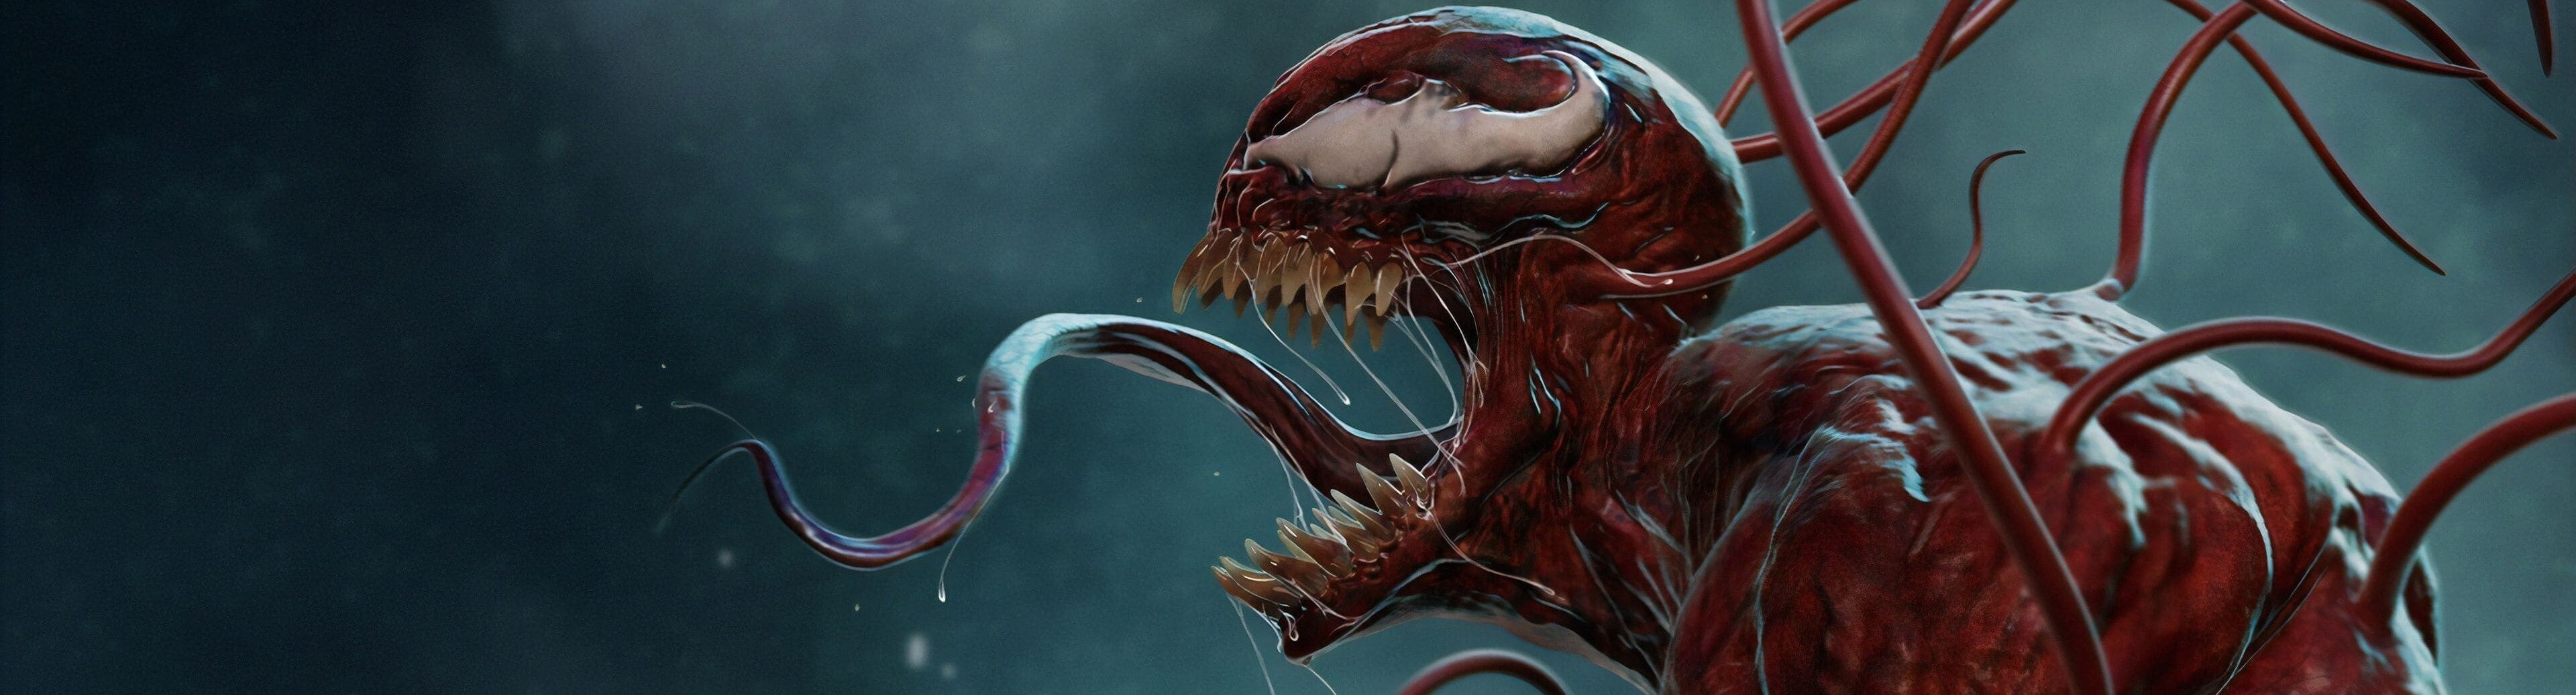 Venom 2: Habrá matanza Película Completa en Castellano's background image'